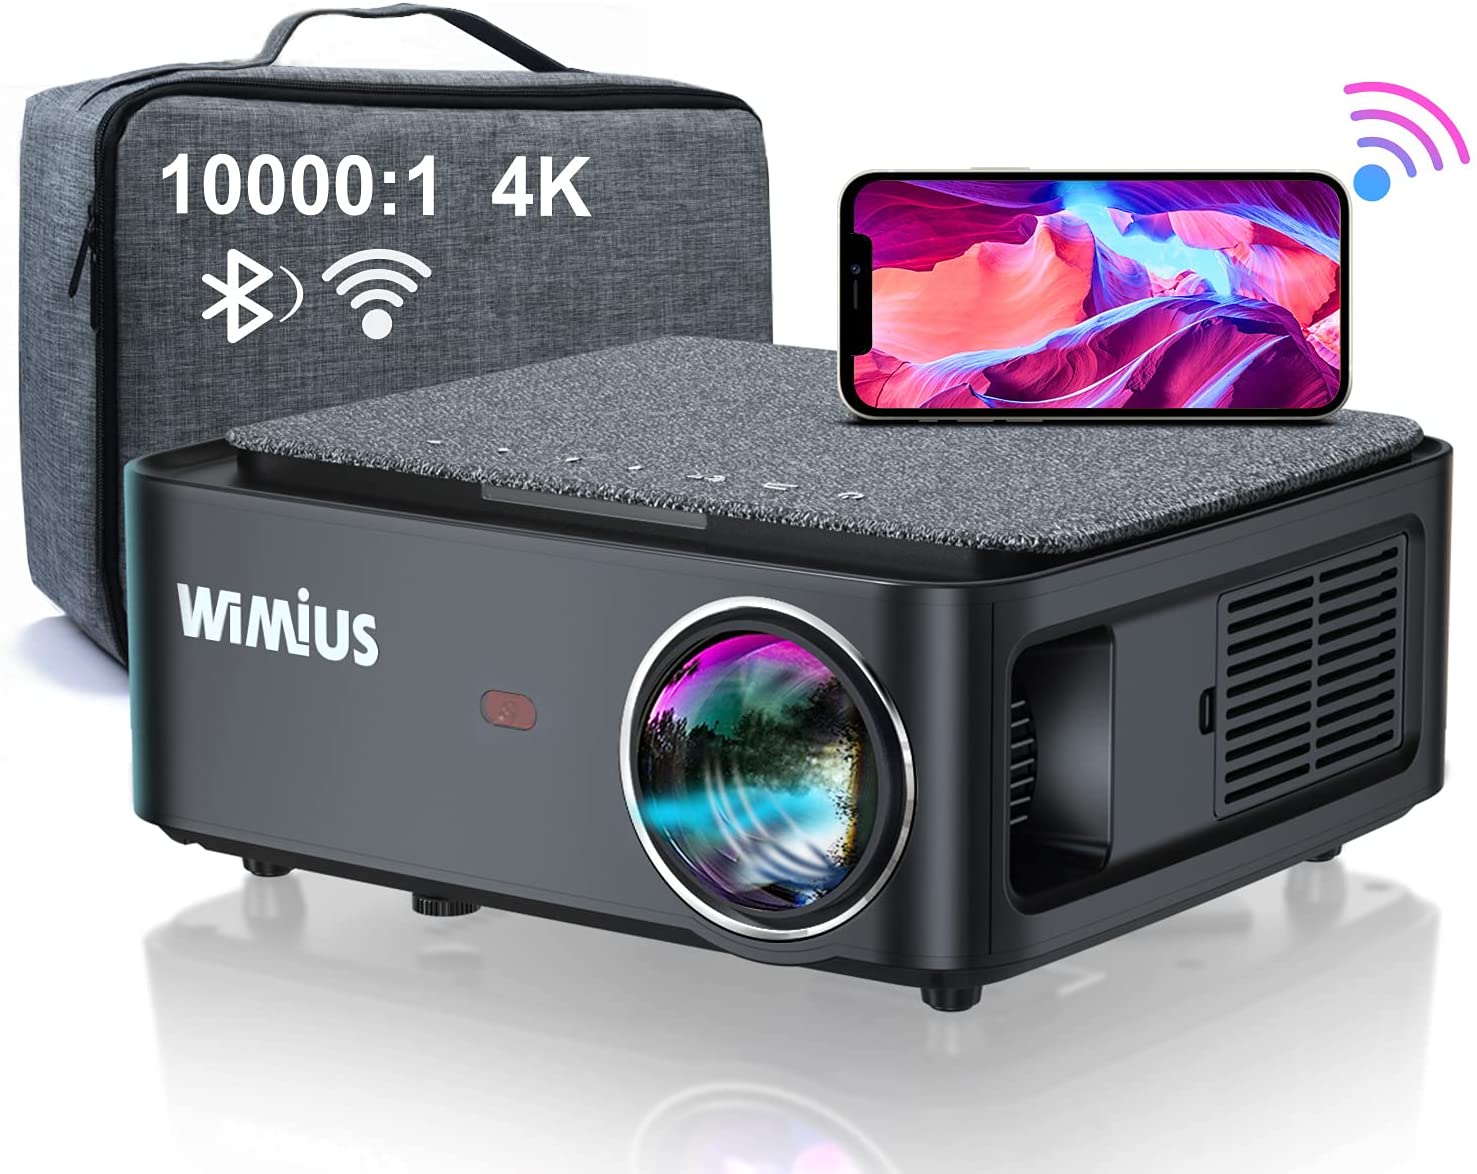 WiMiUS K1 (Best 4k Projector Under 300):